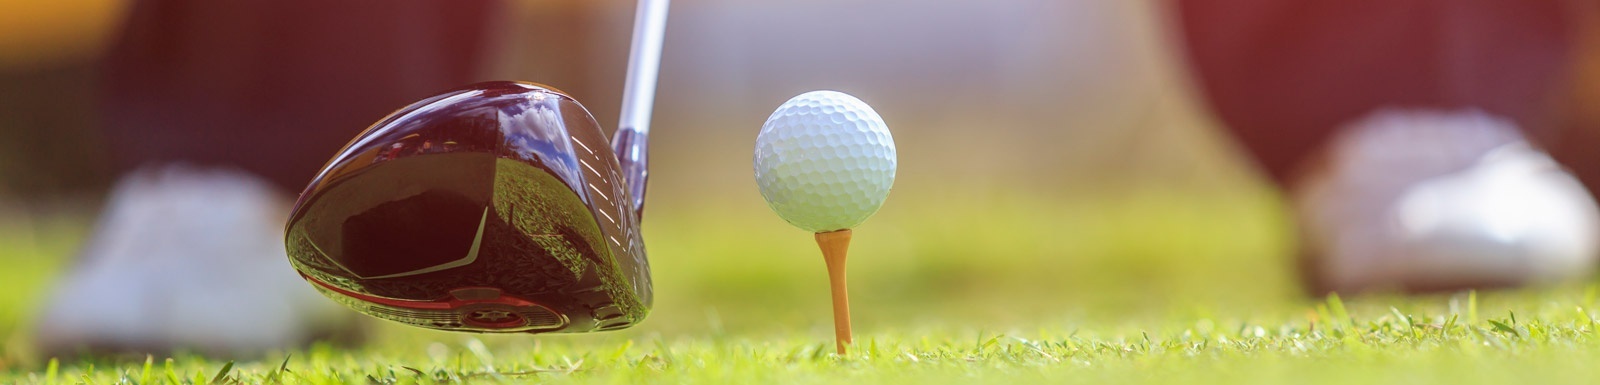 un club de golf golpea una pelota de golf en un tee .